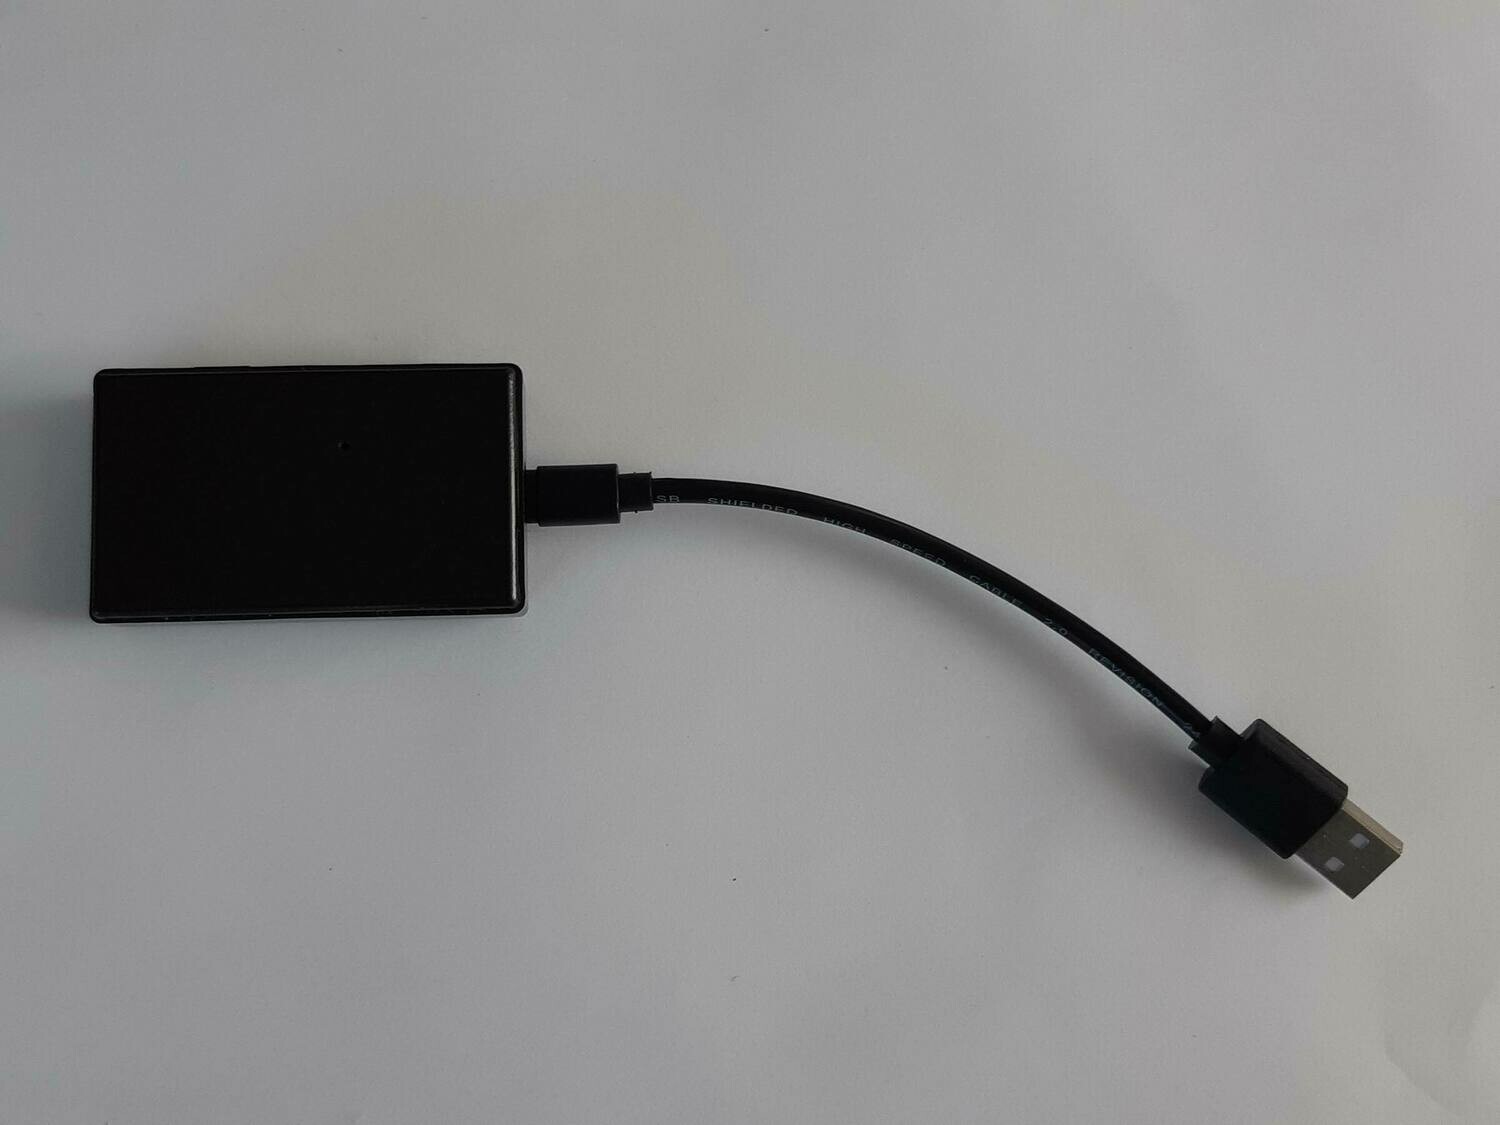 BTScanner - Bluetooth Handy Präsenz Detektor mit Sonderrabatt (optional auch mit eingebautem Thermometer zur anwesenheitsabhängigen Heizungssteuerung)